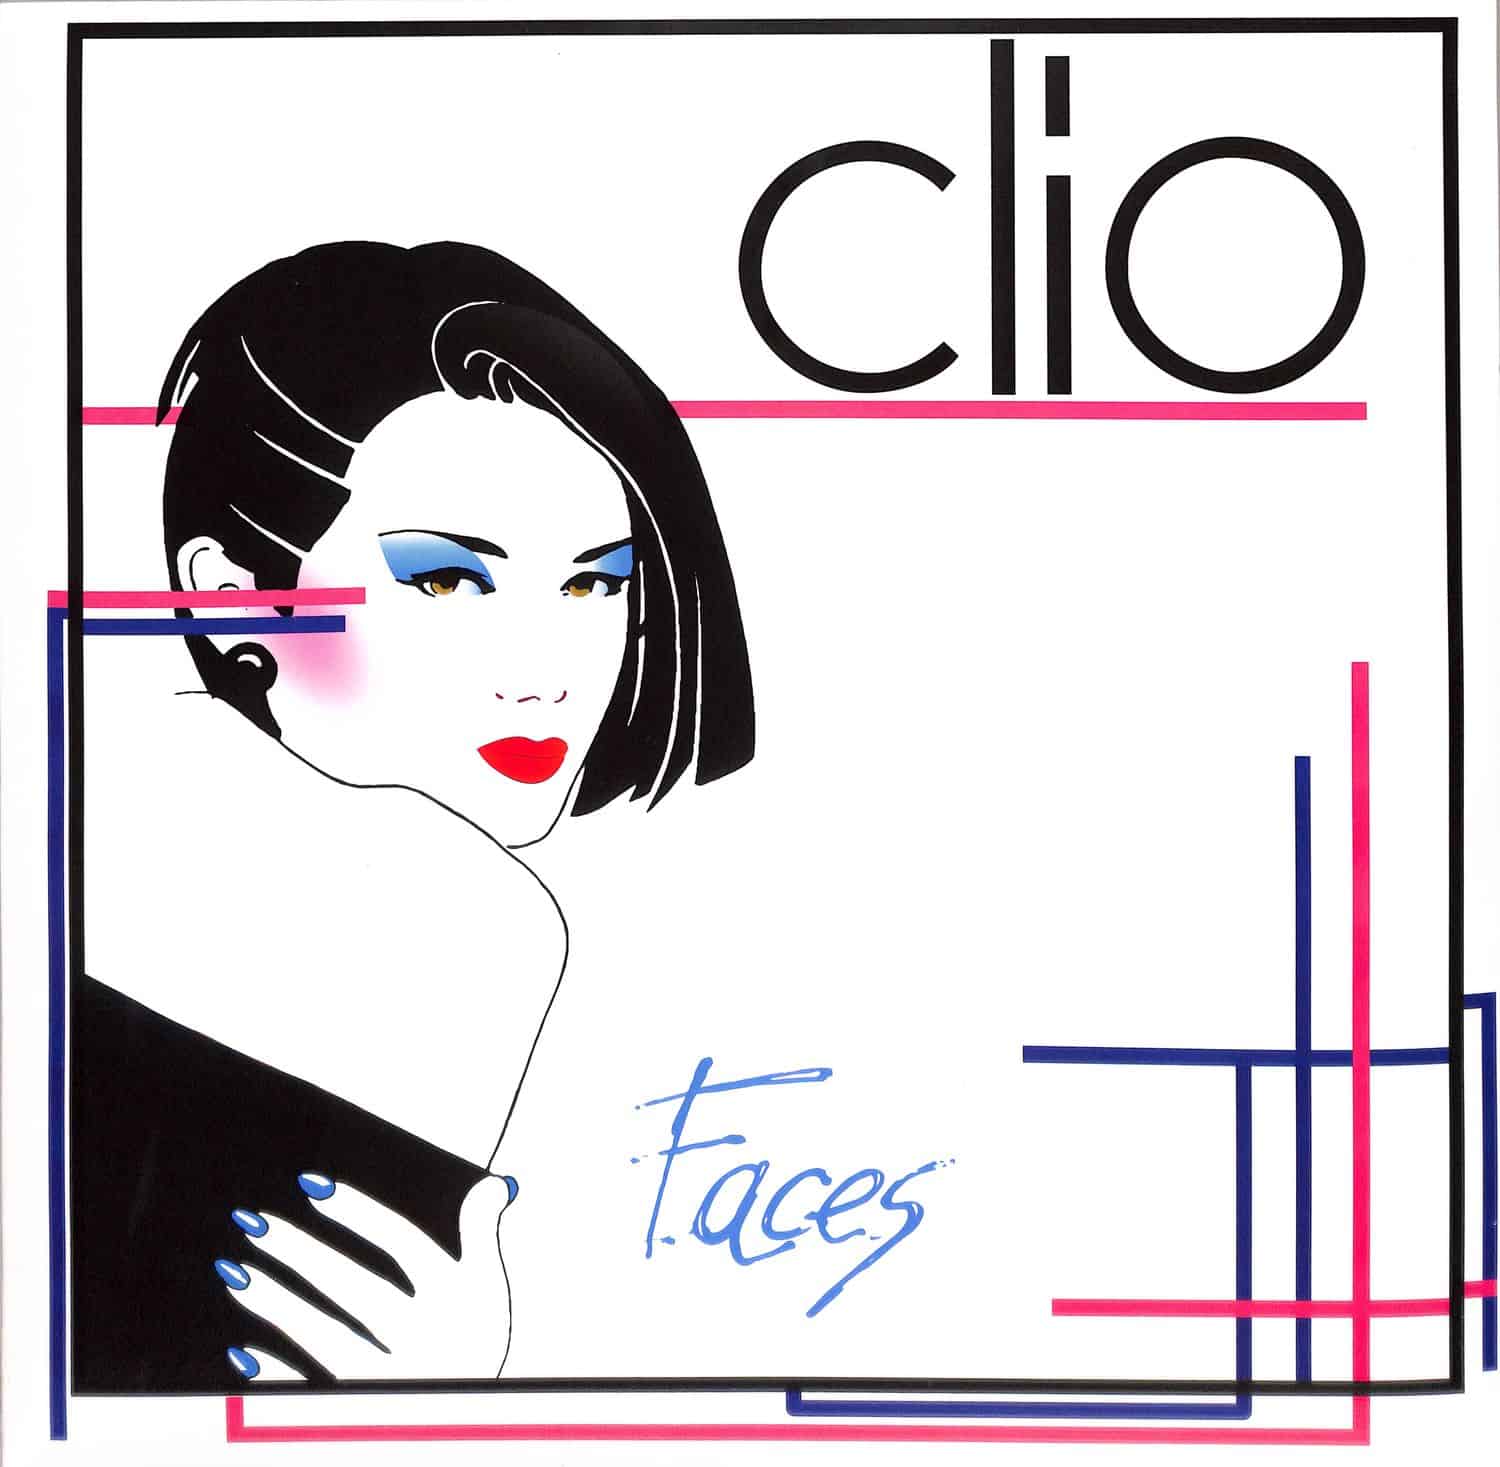 Clio - FACES